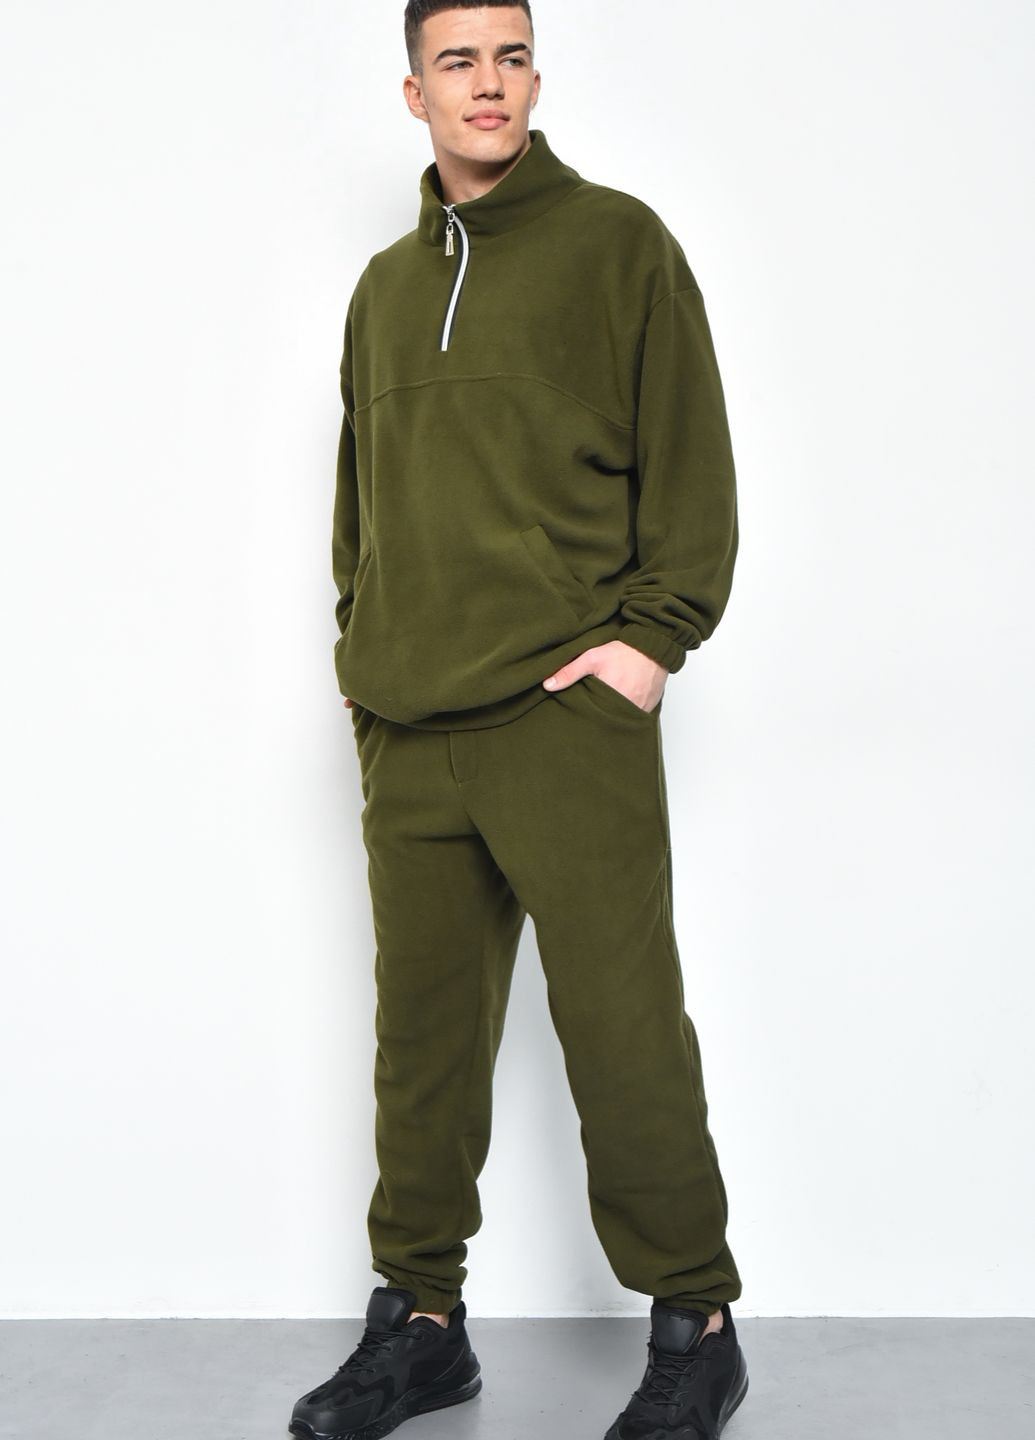 Оливковый (хаки) зимний спортивный костюм мужской флисовый цвета хаки размер 46-48 брючный Let's Shop